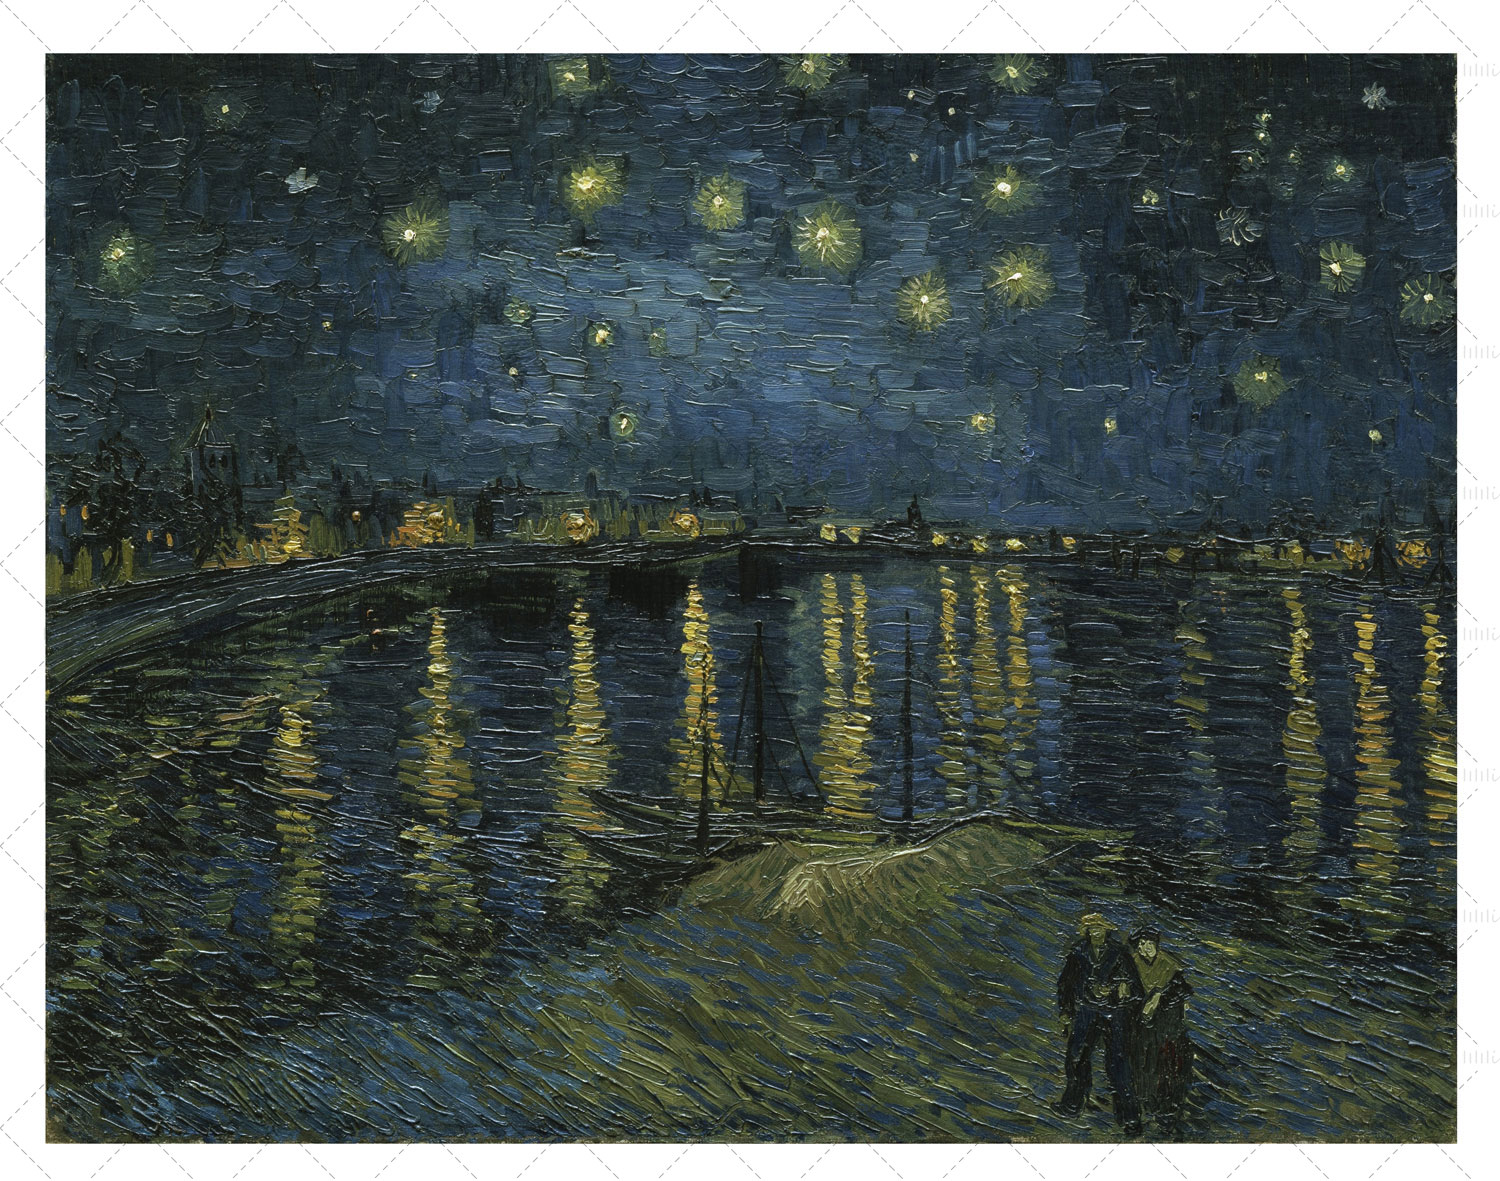 لوحة زيتية: ليلة مليئة بالنجوم فوق الرون (1888) لفنسنت فان جوخ